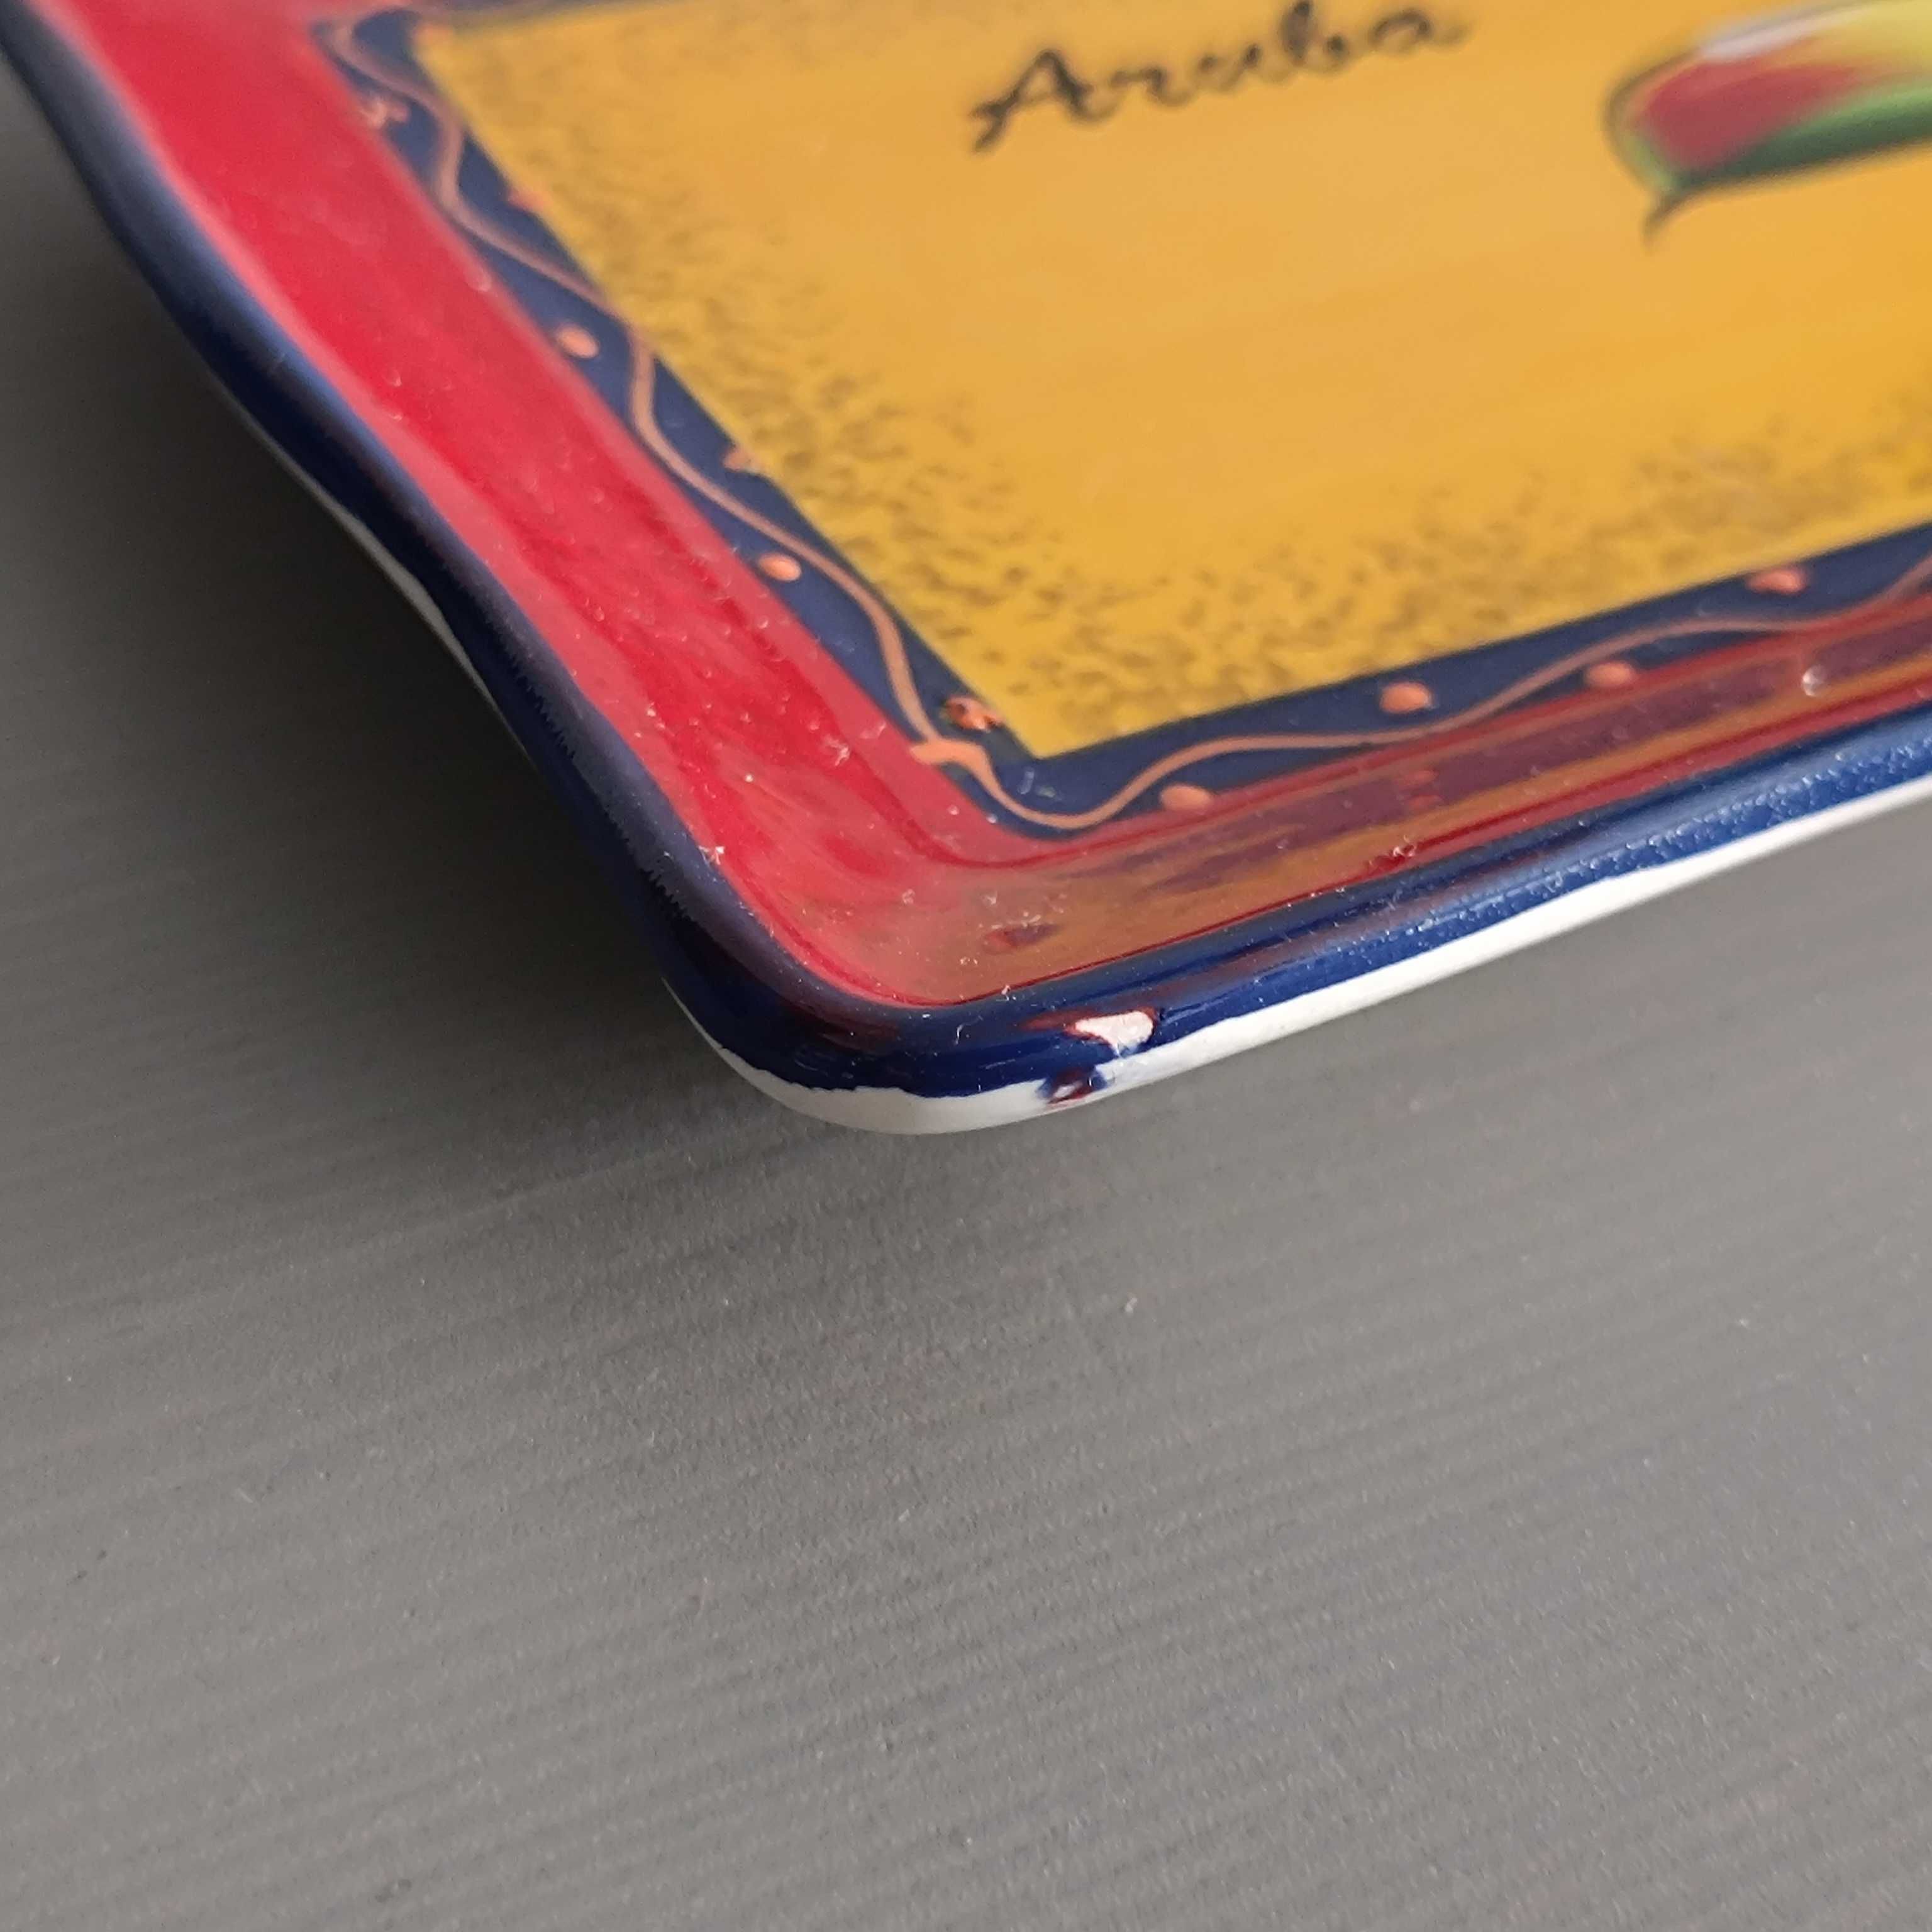 ARUBA pamiątkowy talerzyk dekoracyjny ceramiczny patera 255x129mm